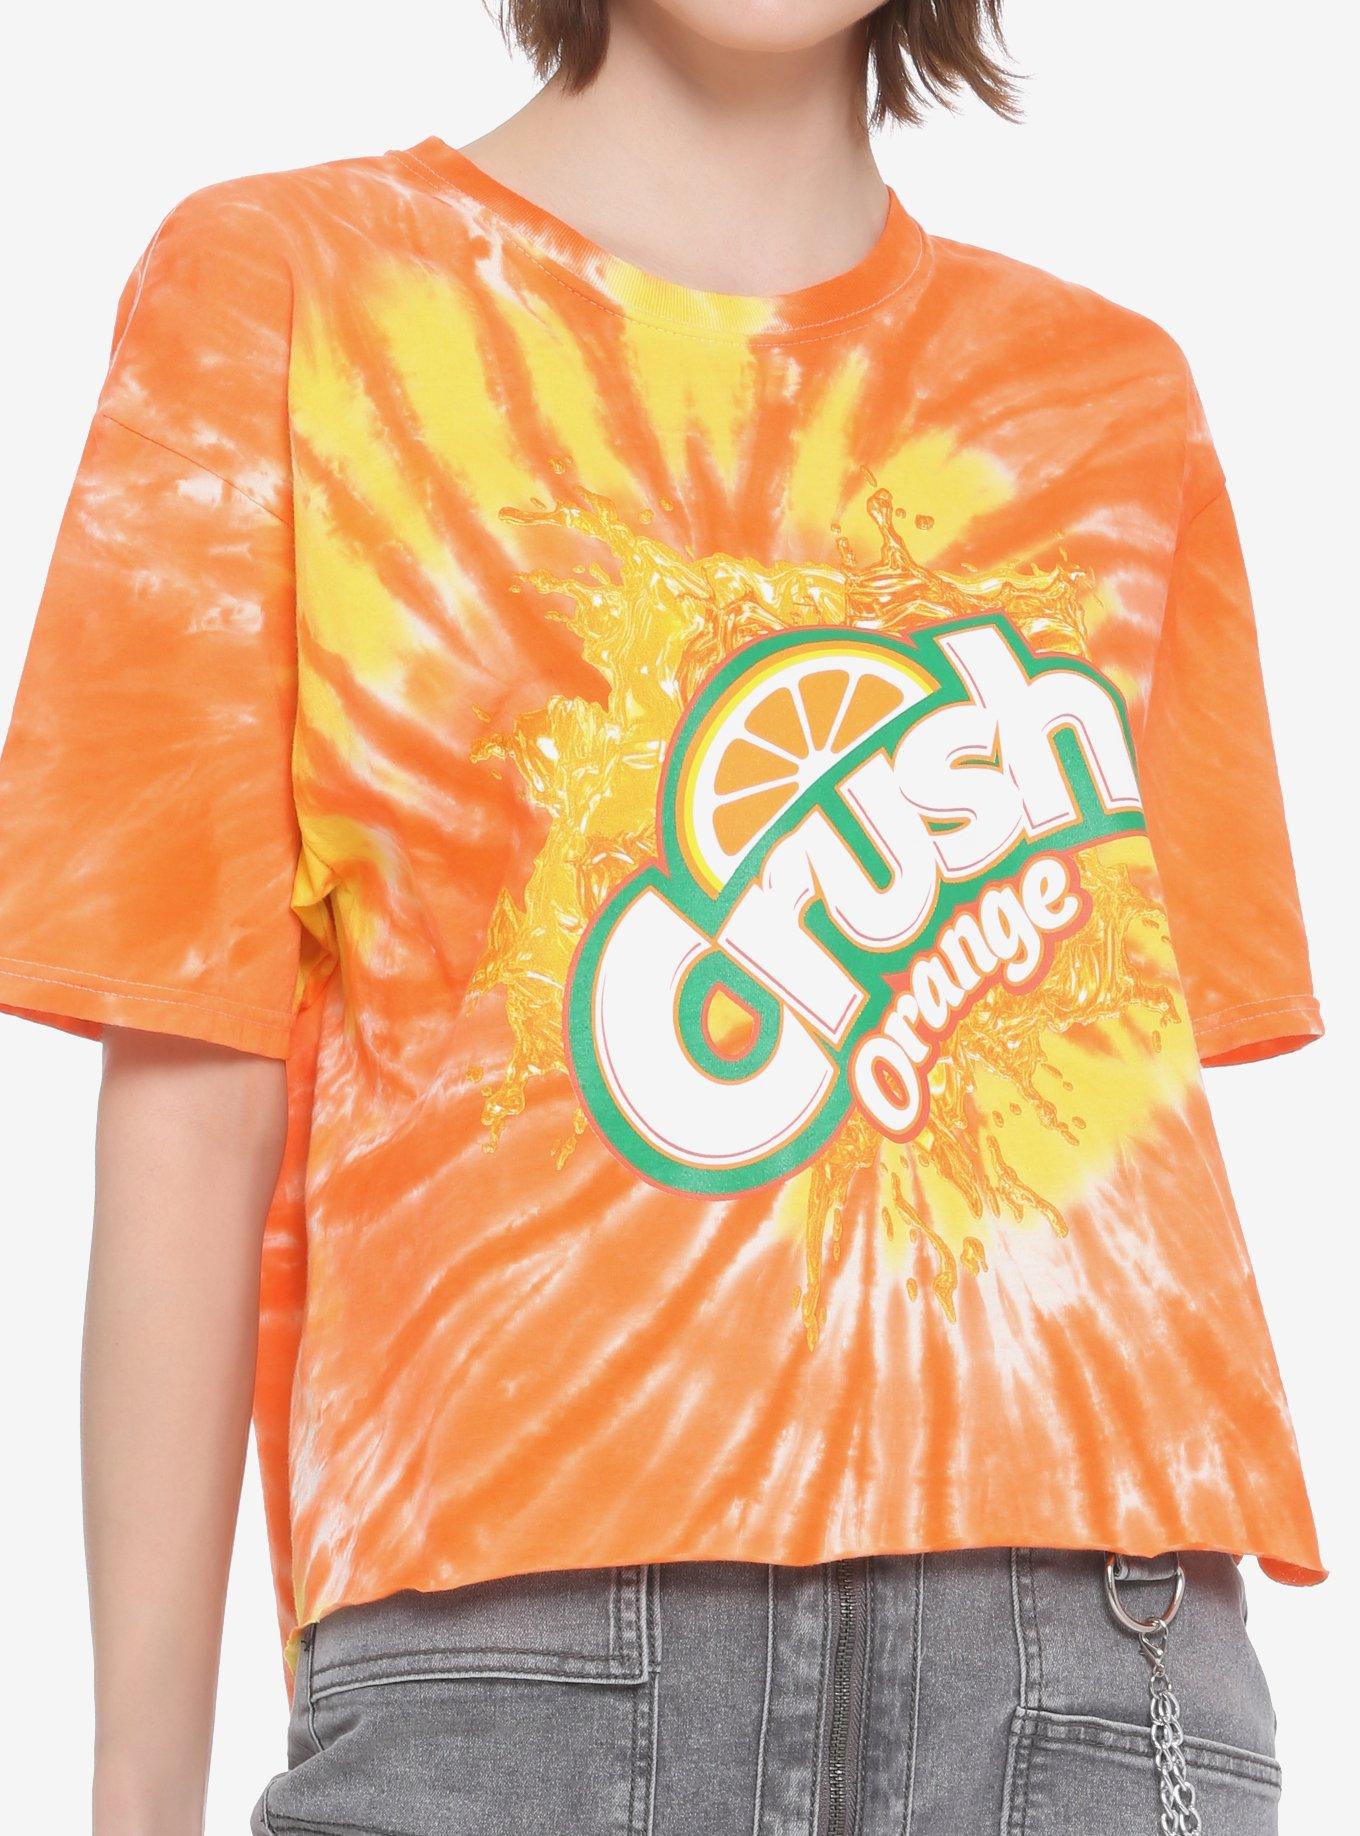 Crush Orange Soda Tie-Dye Girls Crop T-Shirt, MULTI, hi-res